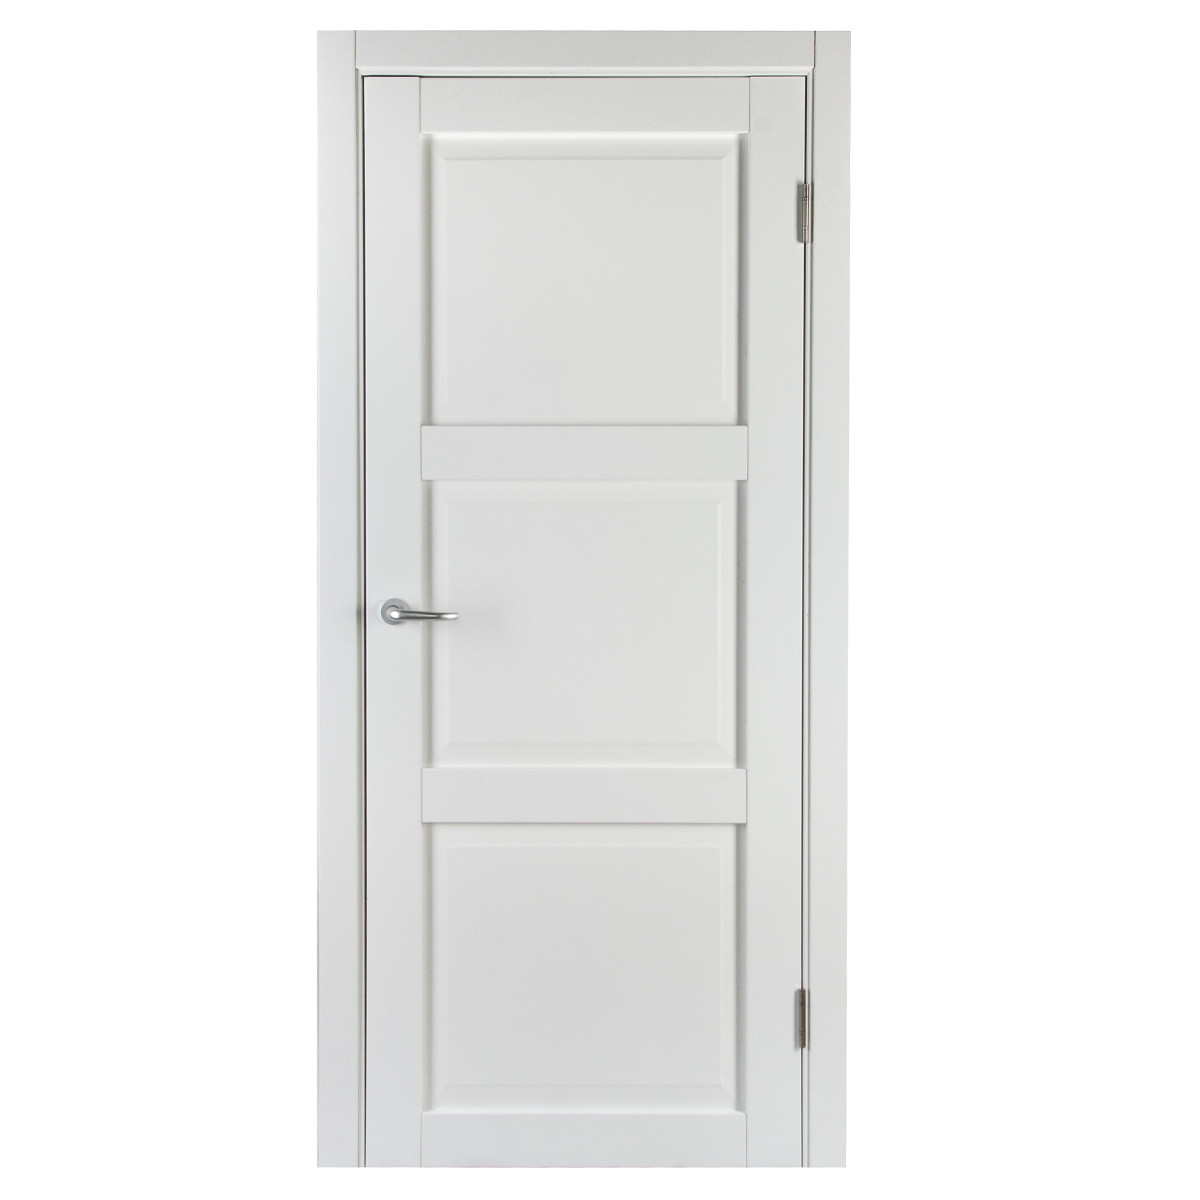 Дверь межкомнатная с фурнитурой Адажио 90х200 см, Hardflex, цвет белый